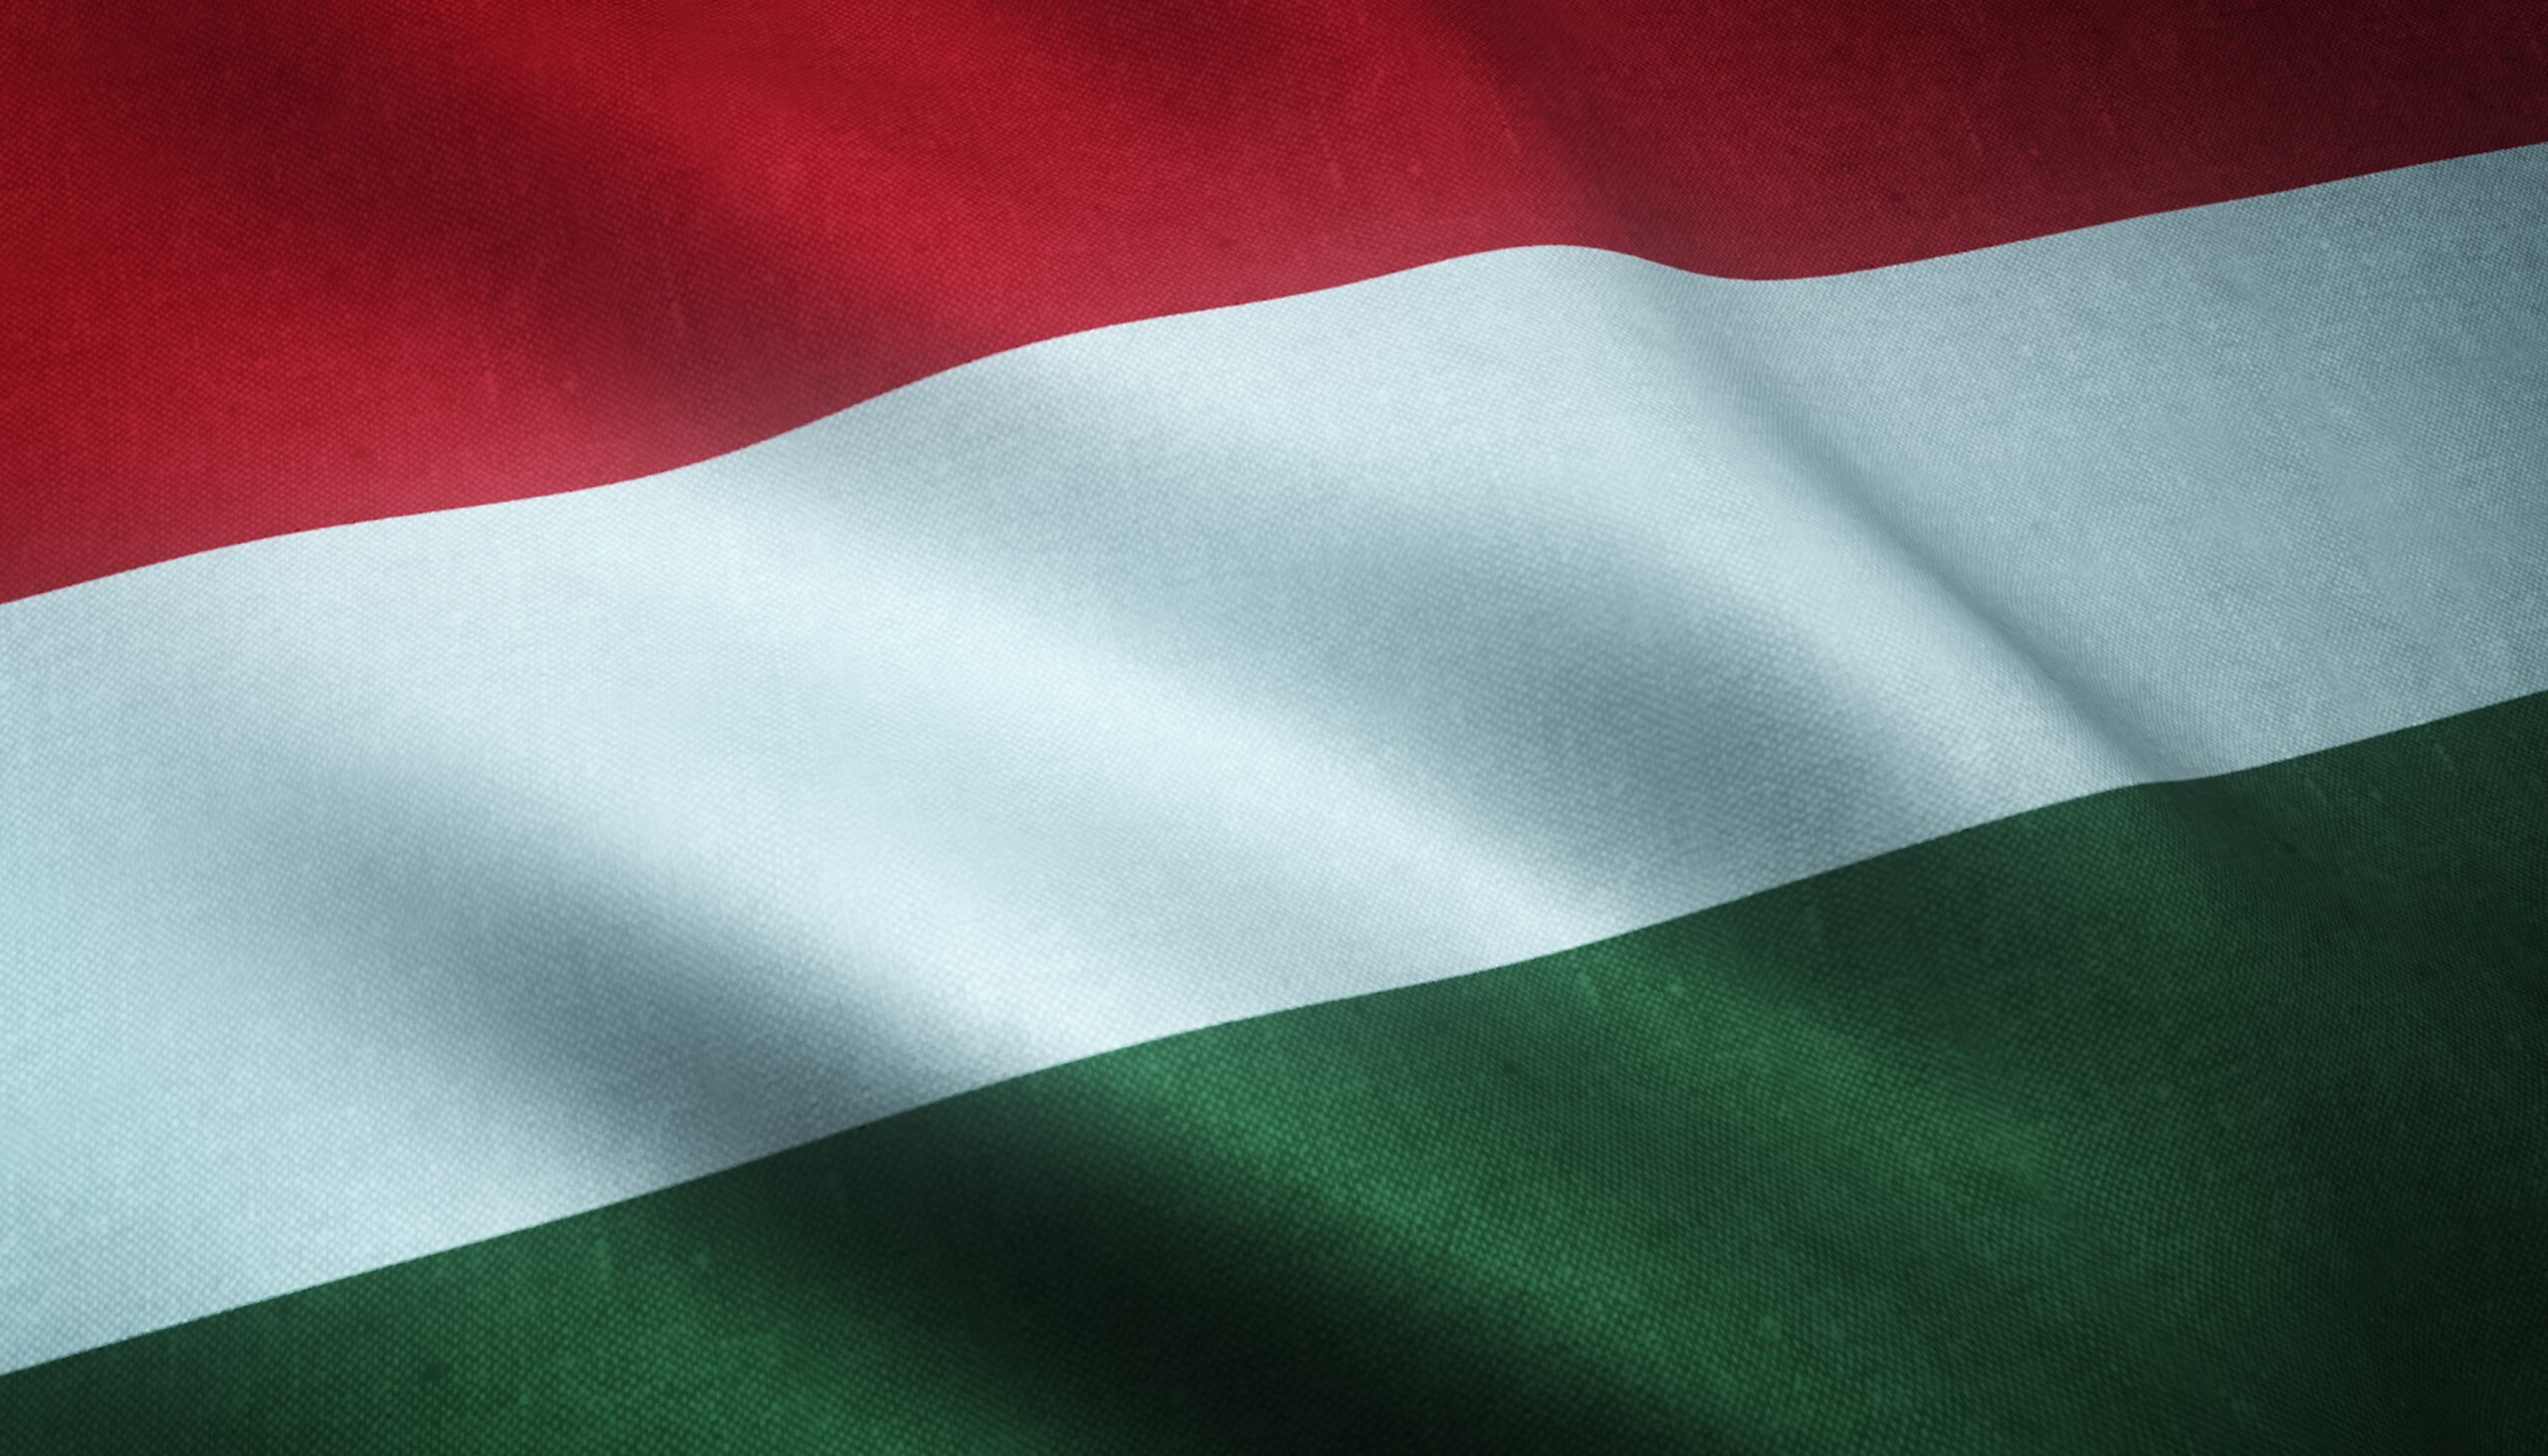 Орбан: Председательство фон дер Ляйен было худшим в истории Евросоюза